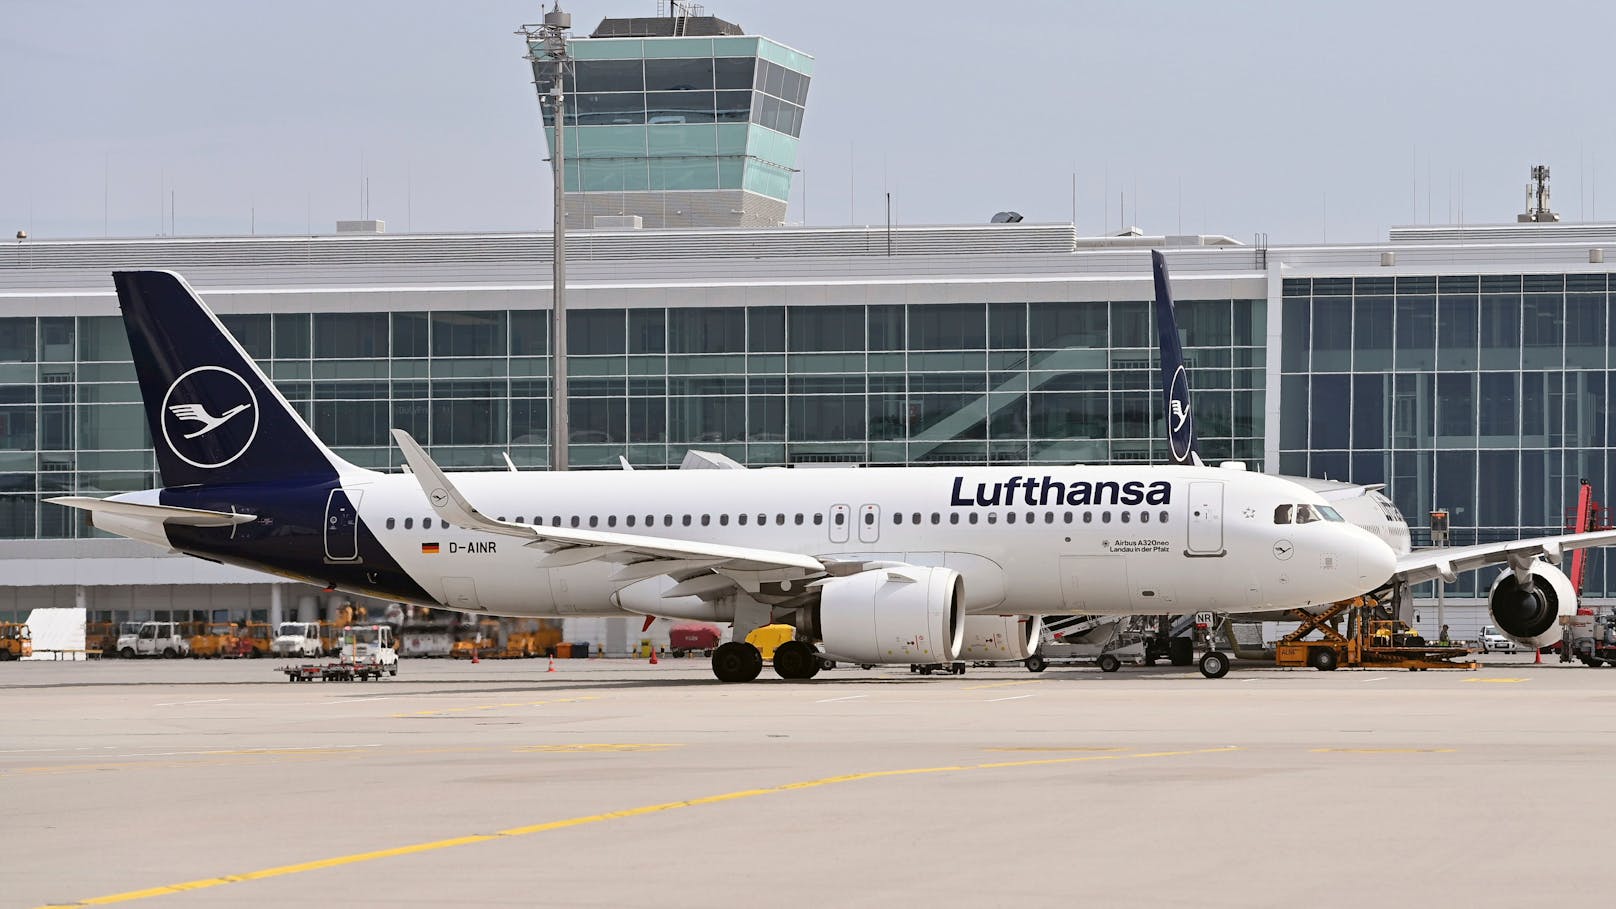 Am Flughafen München ist es am Freitag in einer Lufthansa-Maschine zu einem ungewöhnlichen Zwischenfall gekommen.